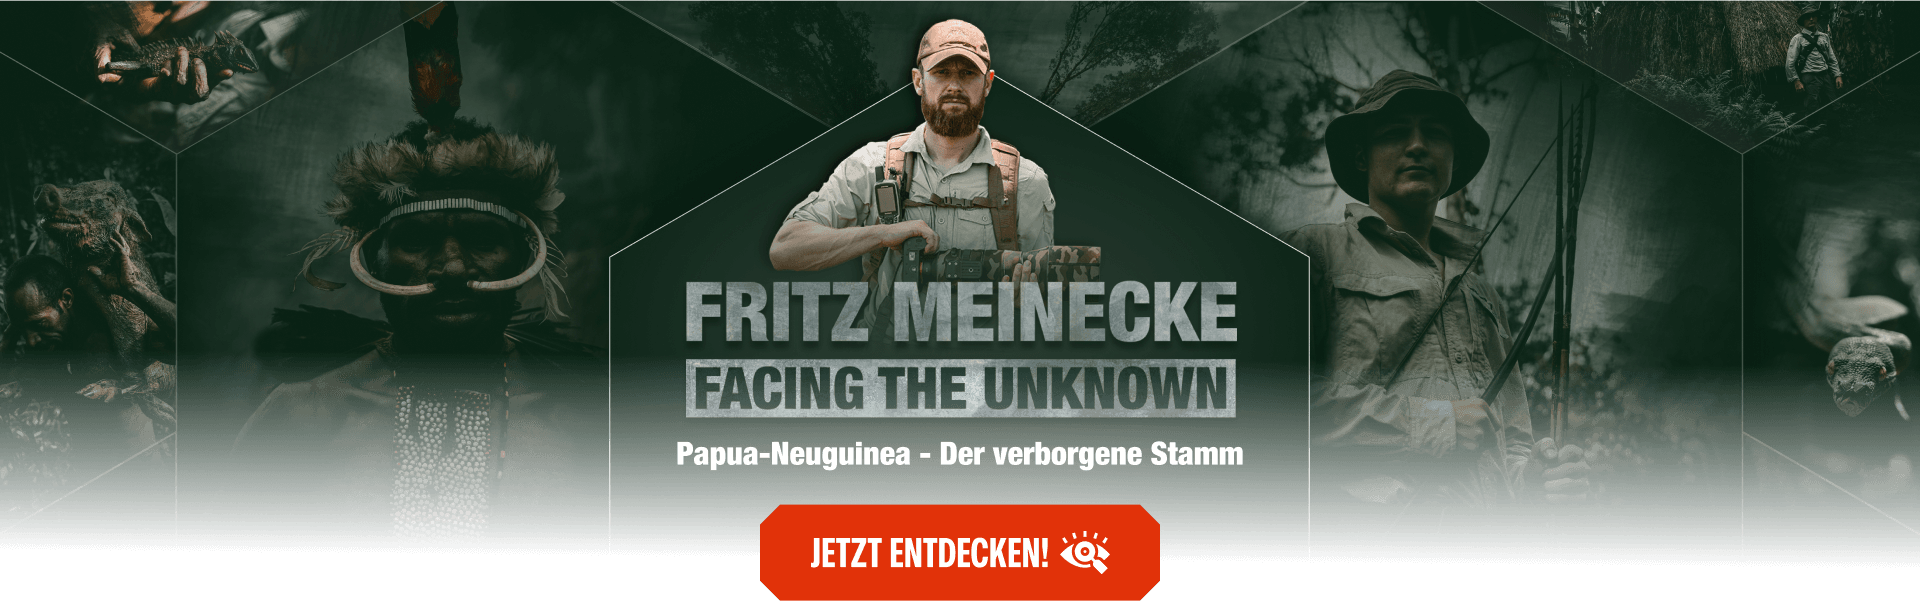 Fritz Meinecke Facing the Unknown - Papua-Neuguinea - Der verborgene Stamm